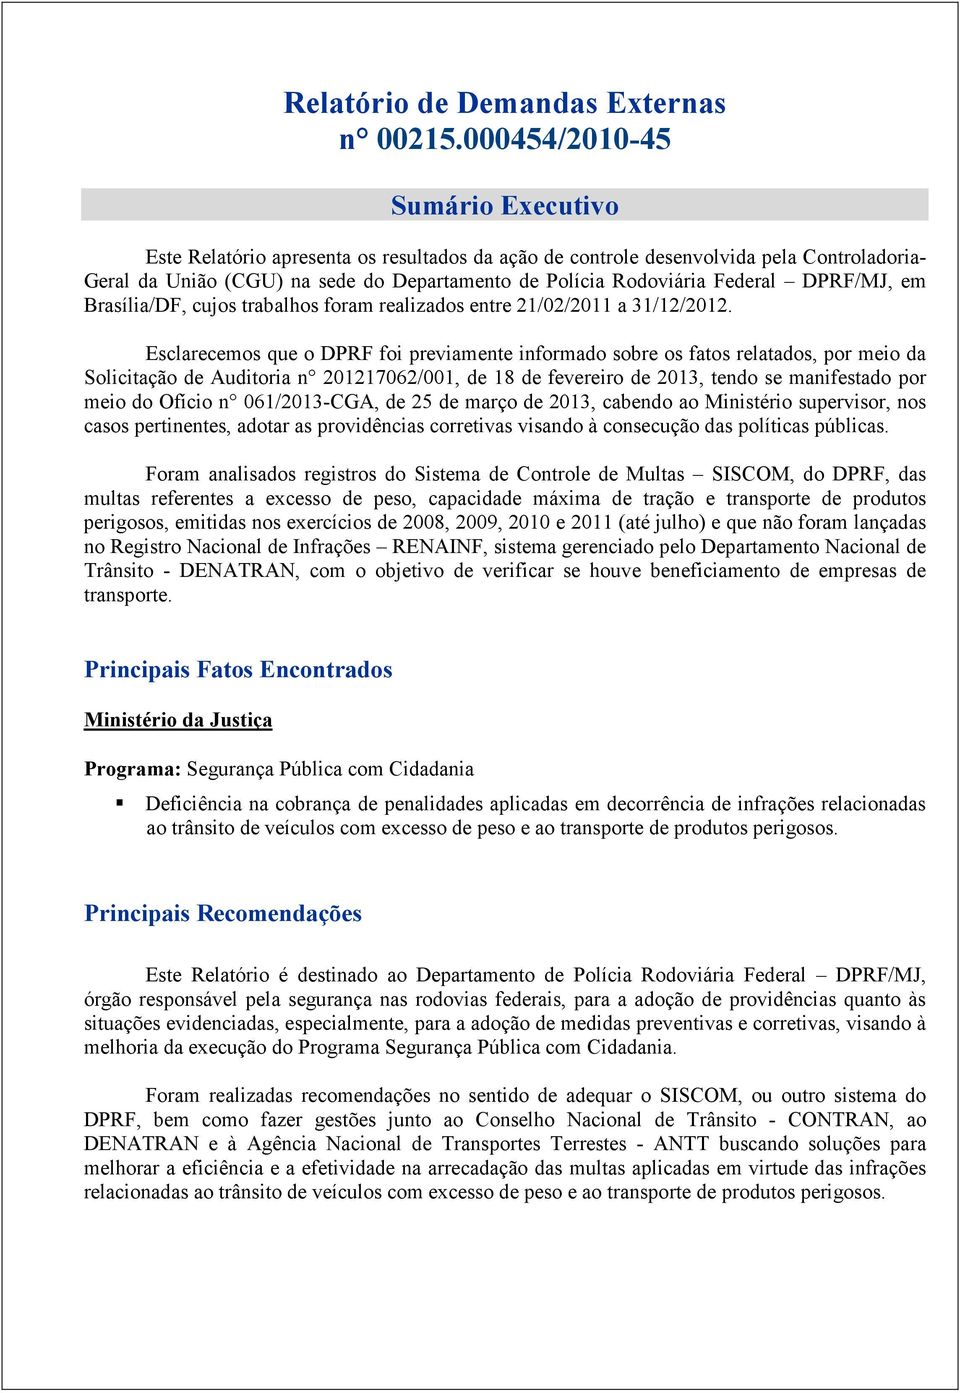 DPRF/MJ, em Brasília/DF, cujos trabalhos foram realizados entre 21/02/2011 a 31/12/2012.